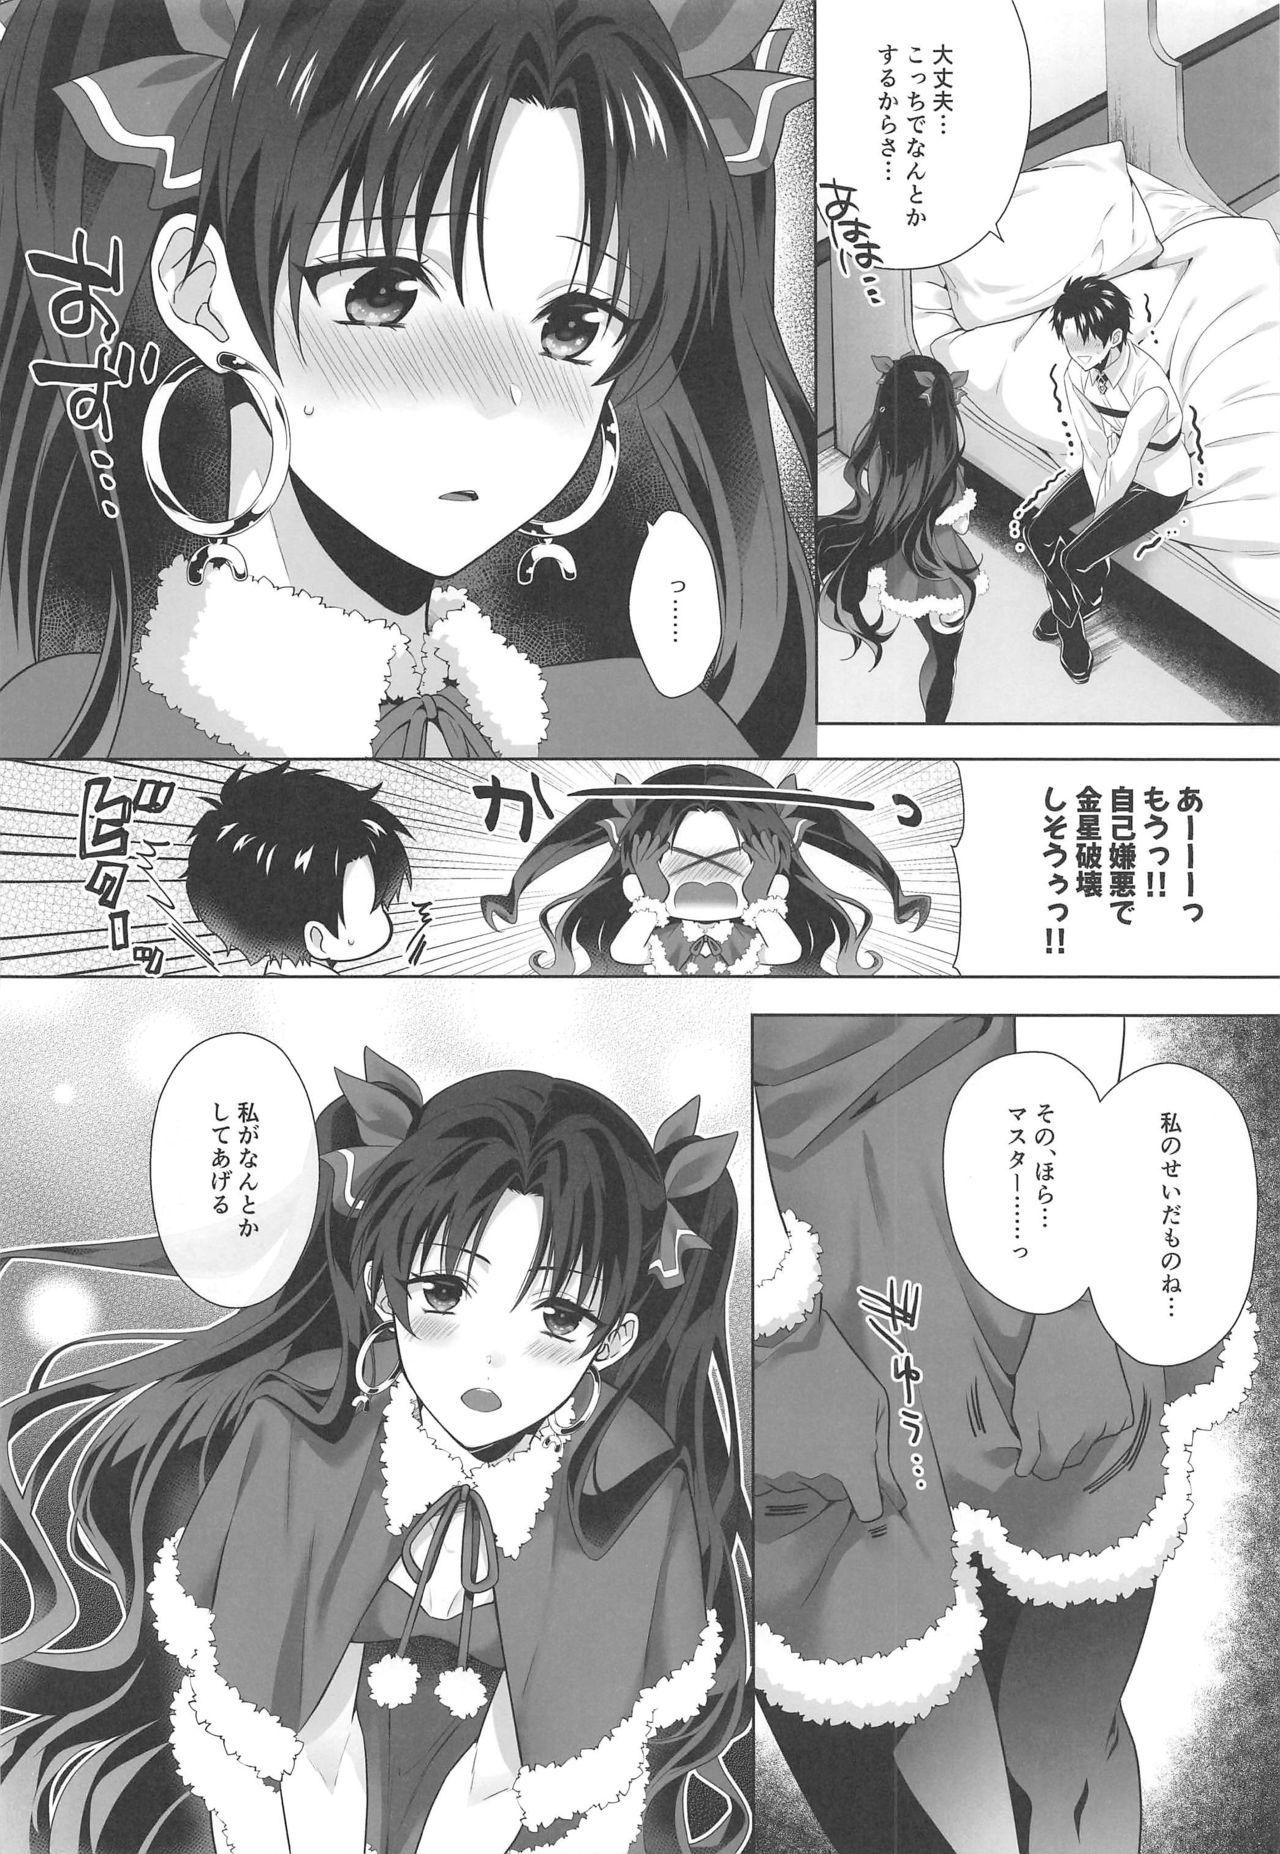 Ruiva Kimi to Seinaru Yoru ni - Fate grand order Pawg - Page 5